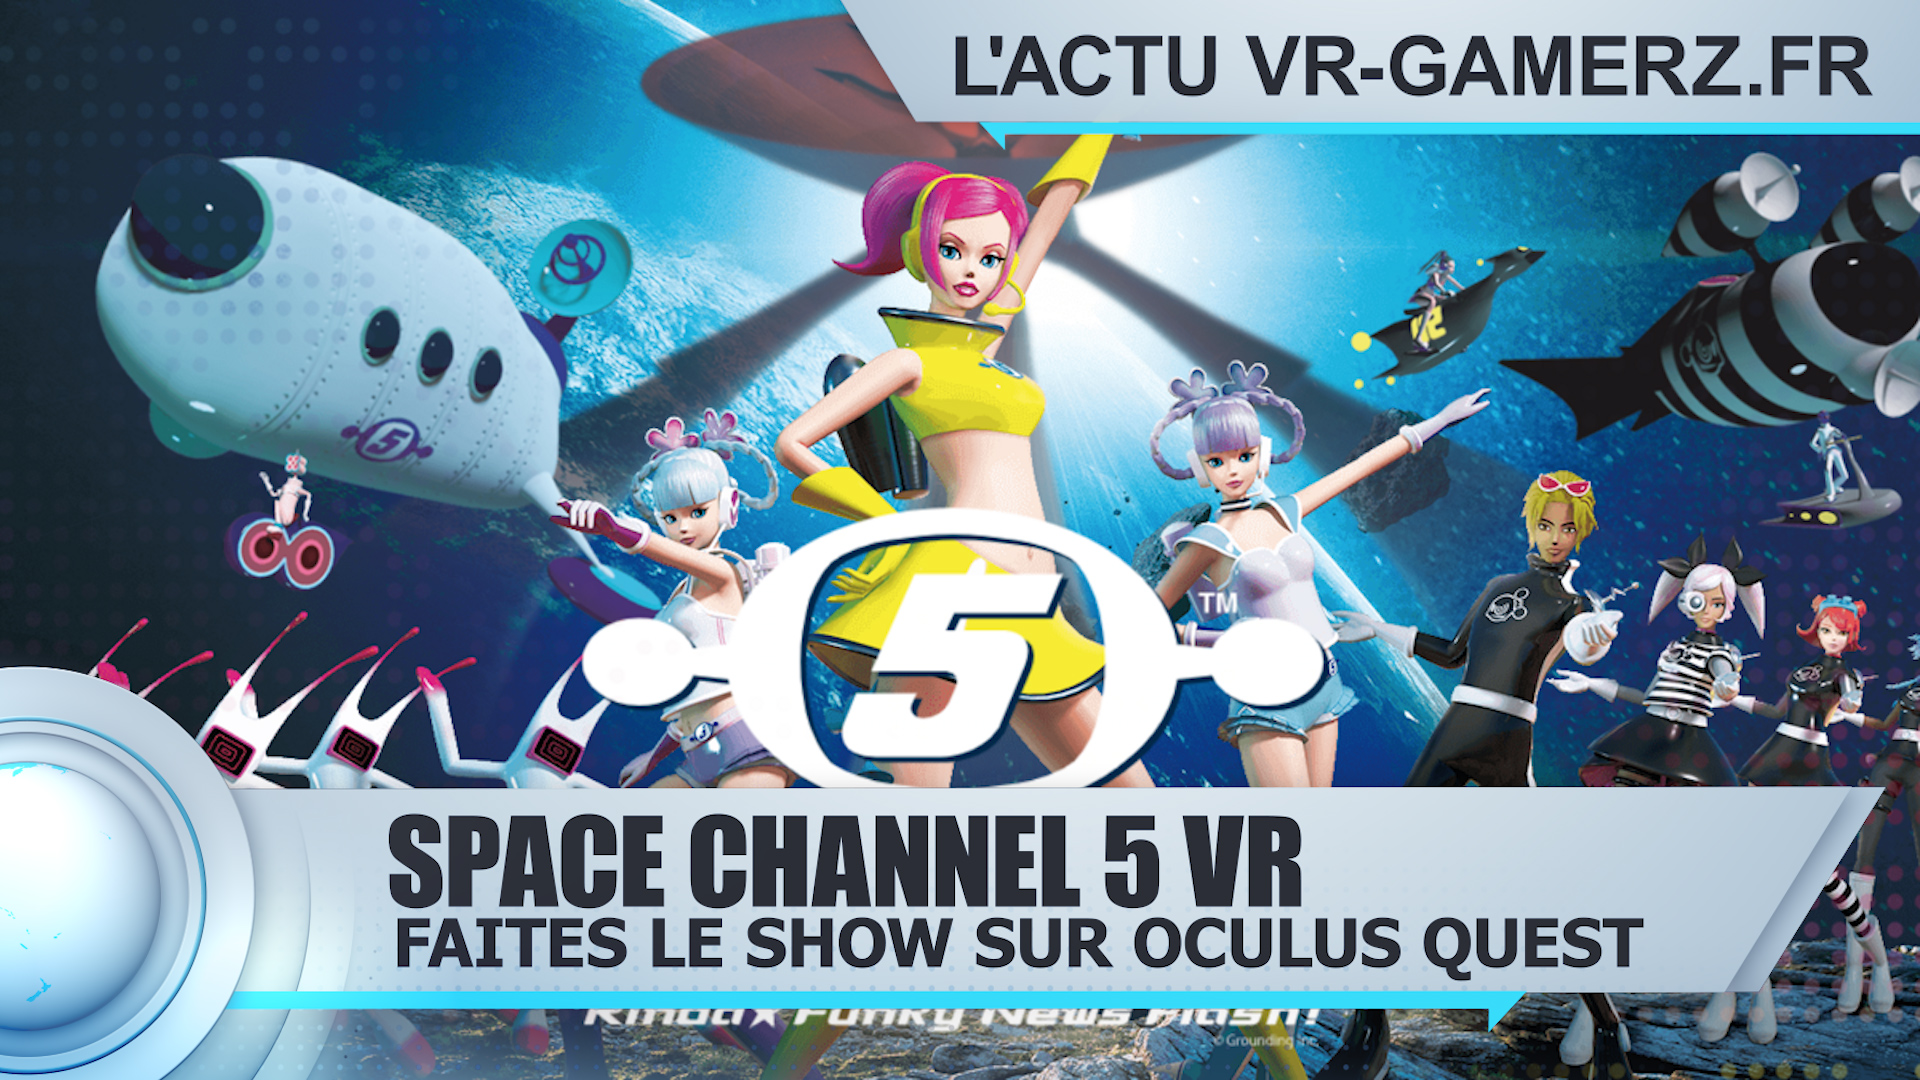 Space Channel 5 Oculus quest : Faites le show pour sauver la terre